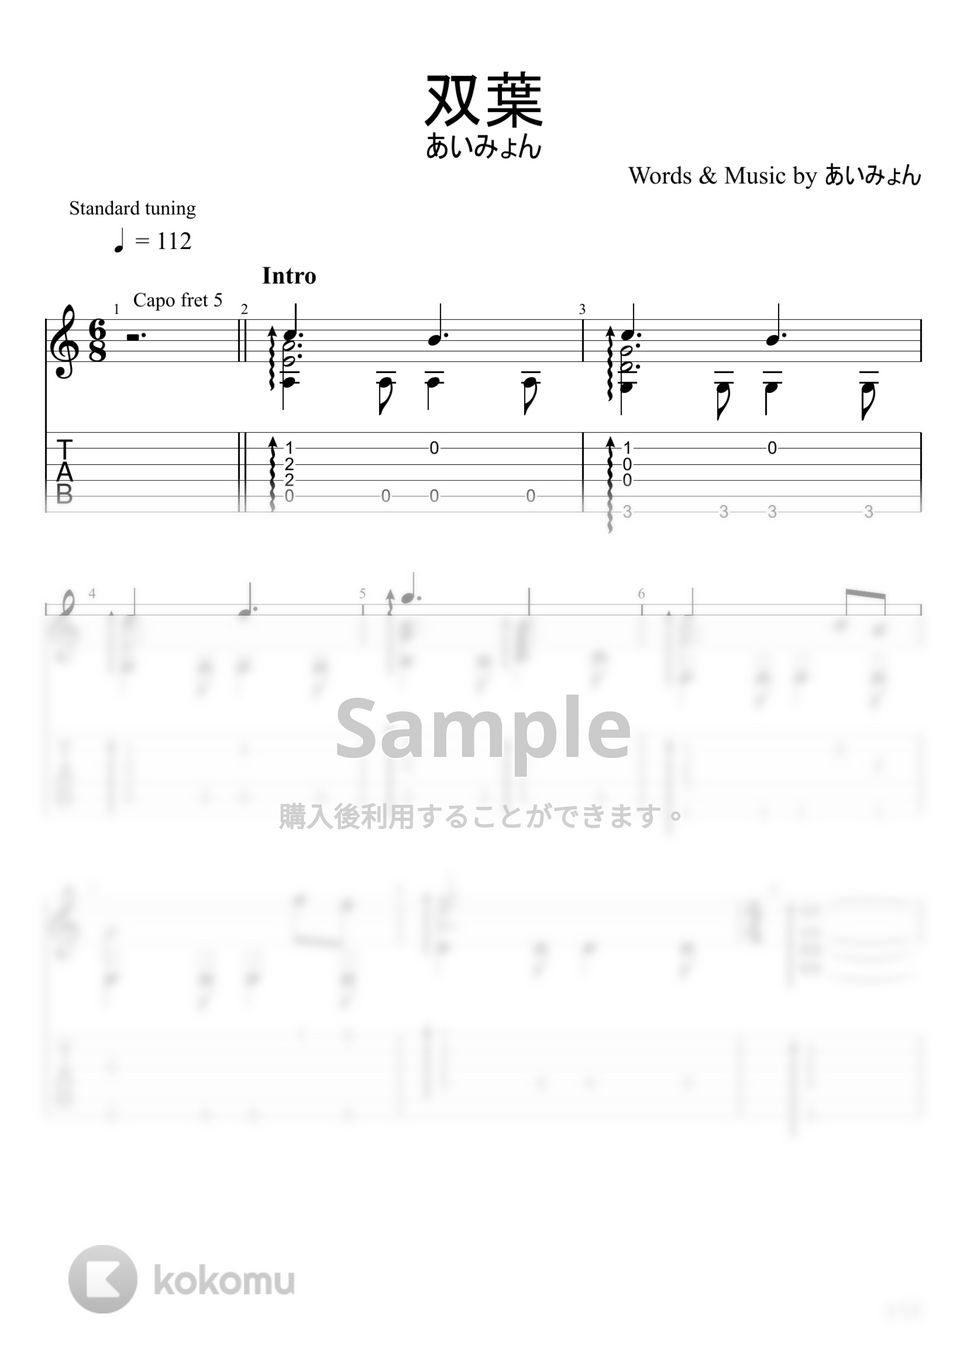 あいみょん - 双葉 (ソロギター) by u3danchou